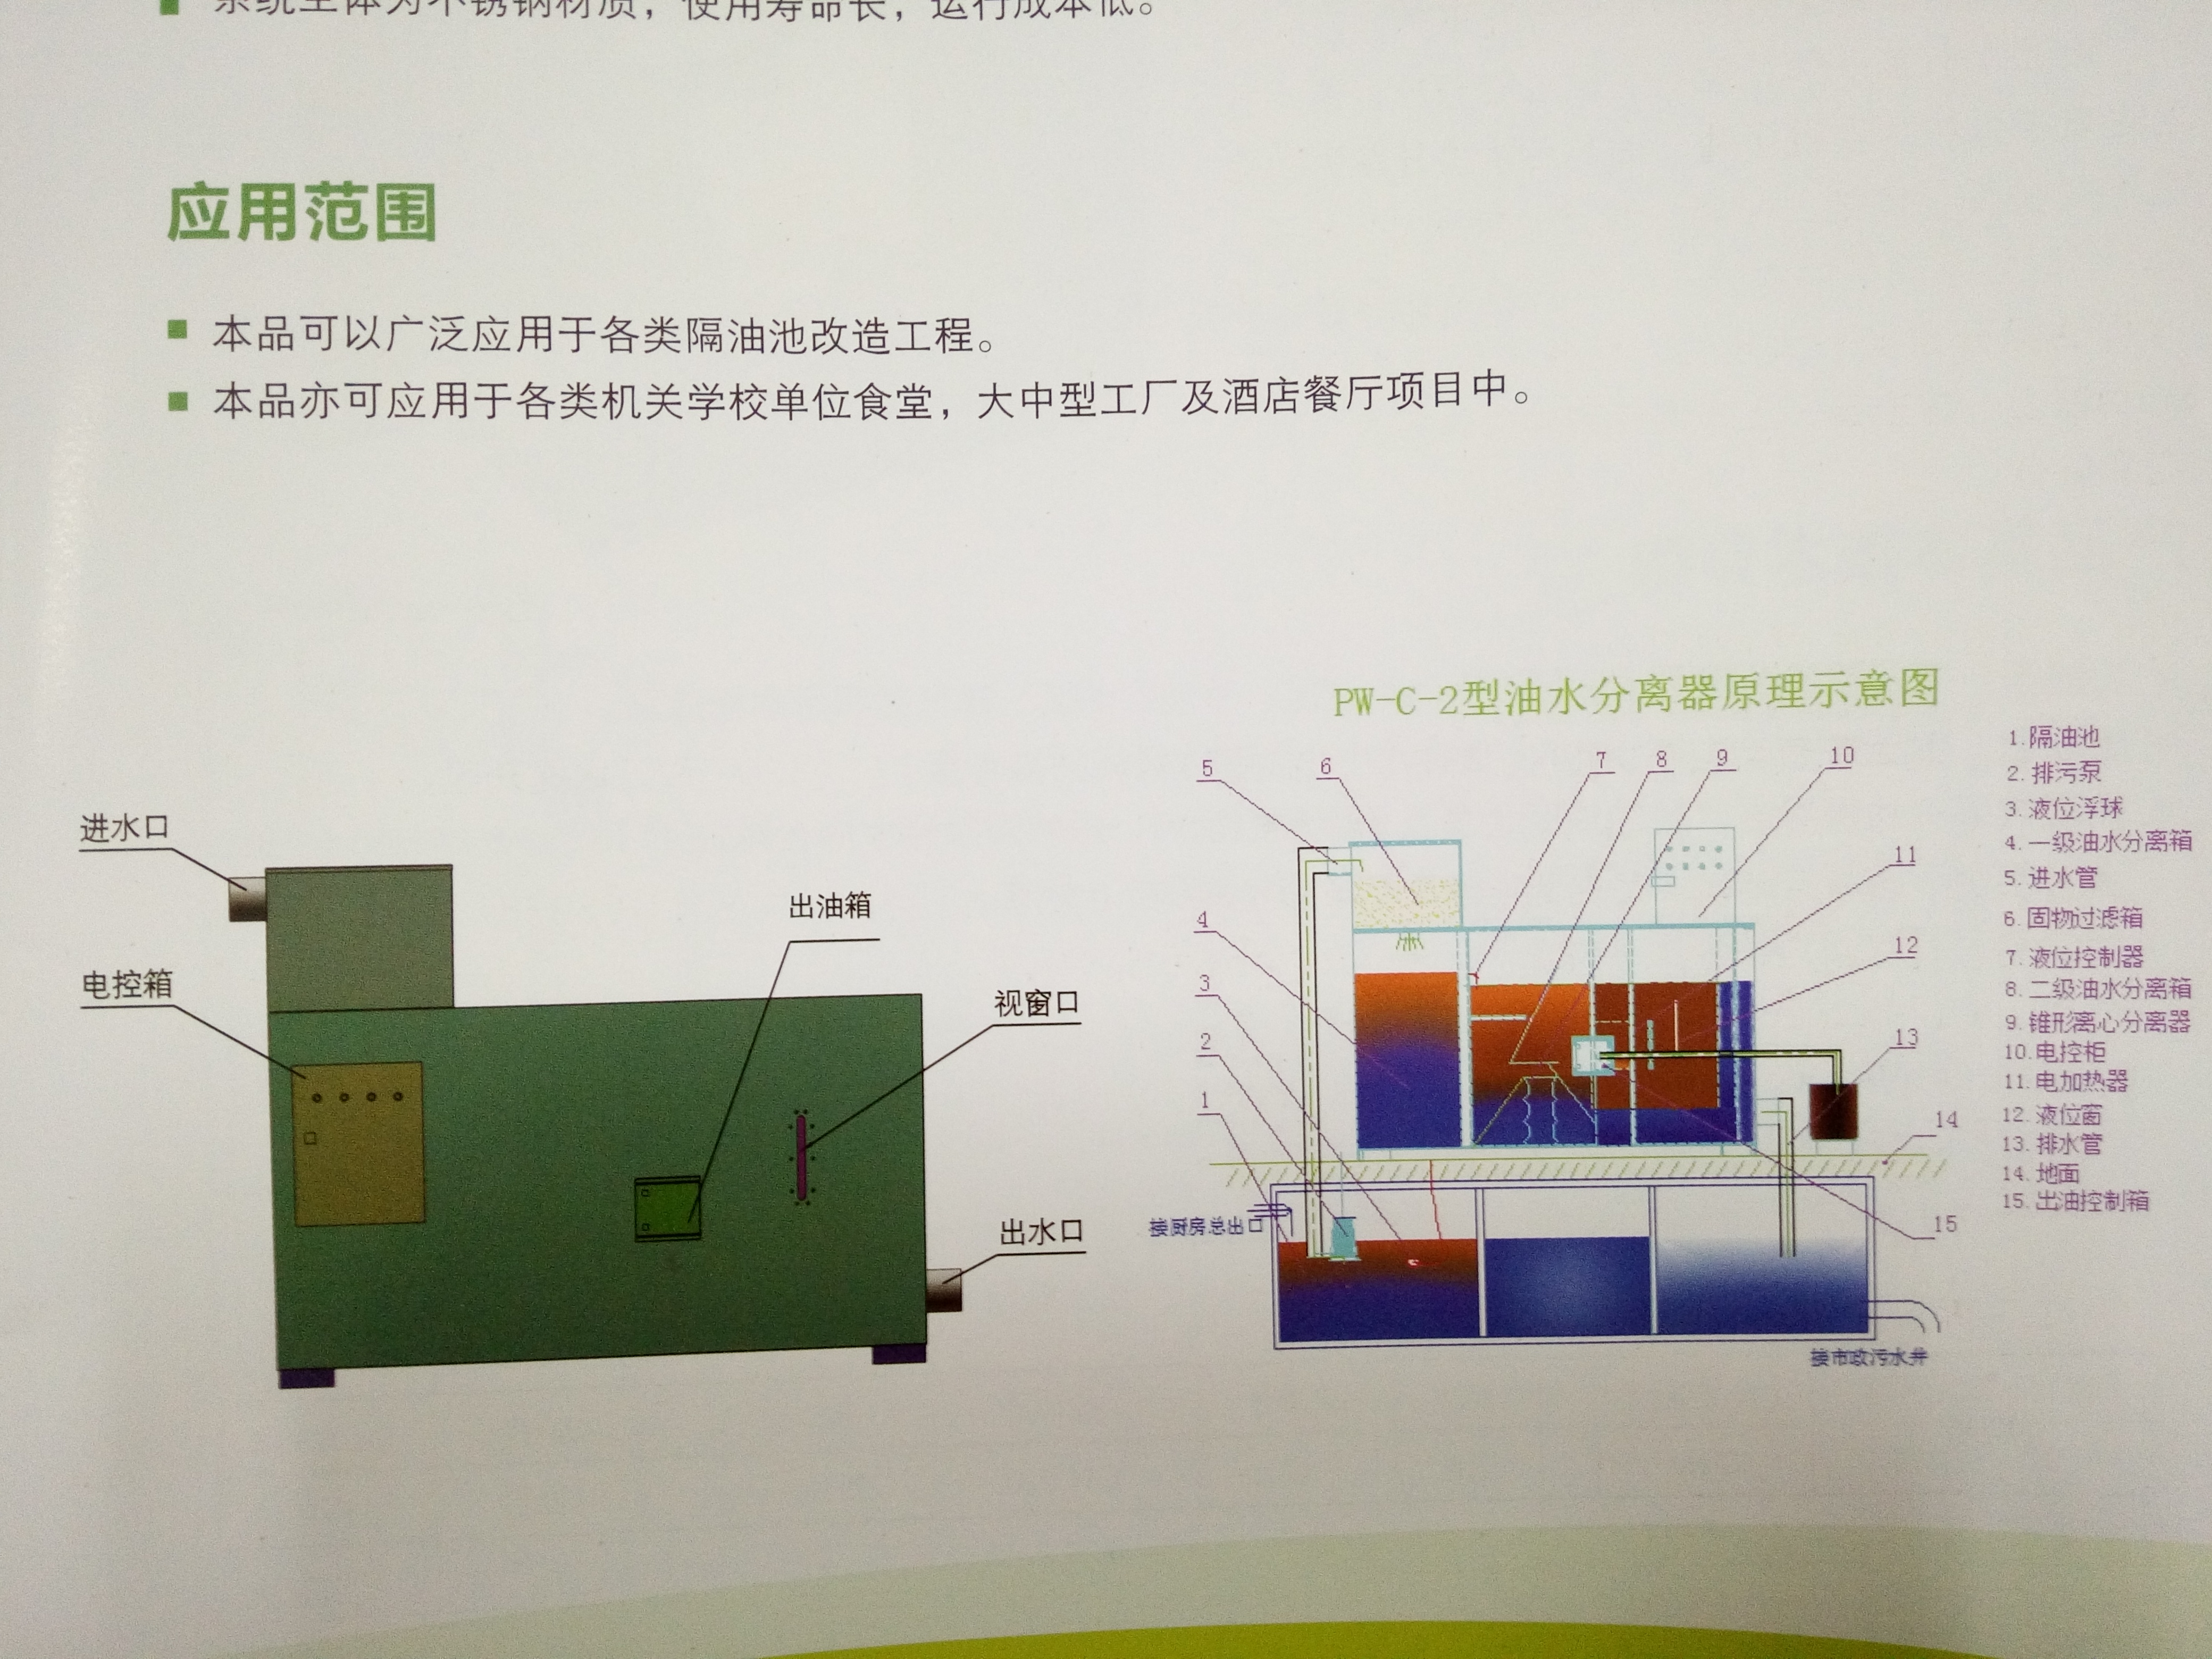 上海中器环保设备小型油水分离器厂家直销、上海油水分离器厂家